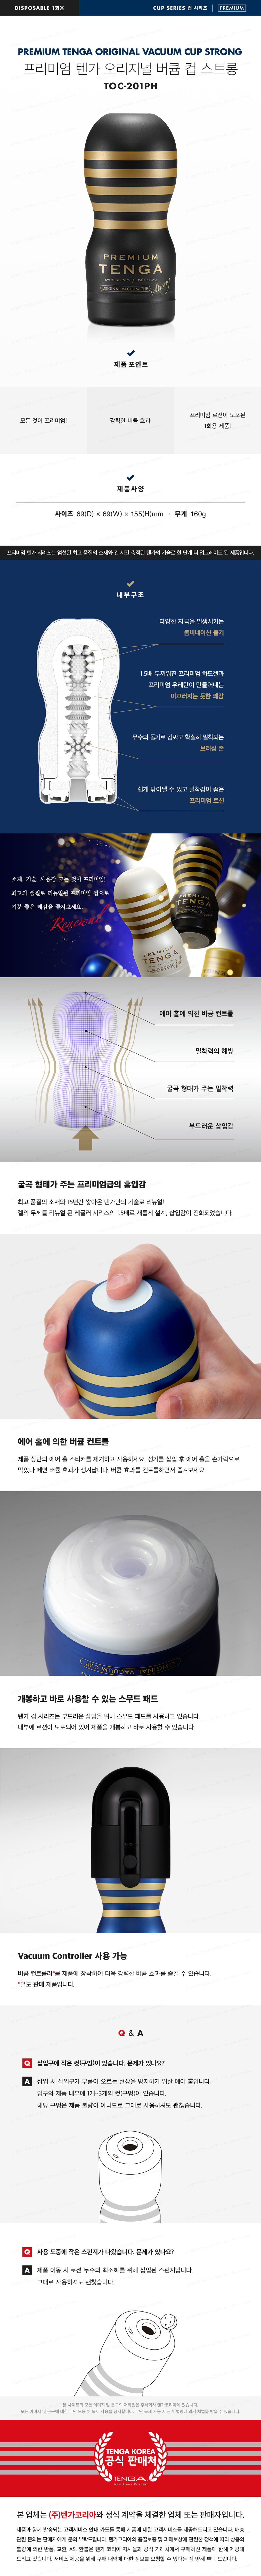 프리미엄 텐가 오리지널 버큠 컵 스트롱 PREMIUM TENGA ORIGINAL VACUUM CUP STRONG